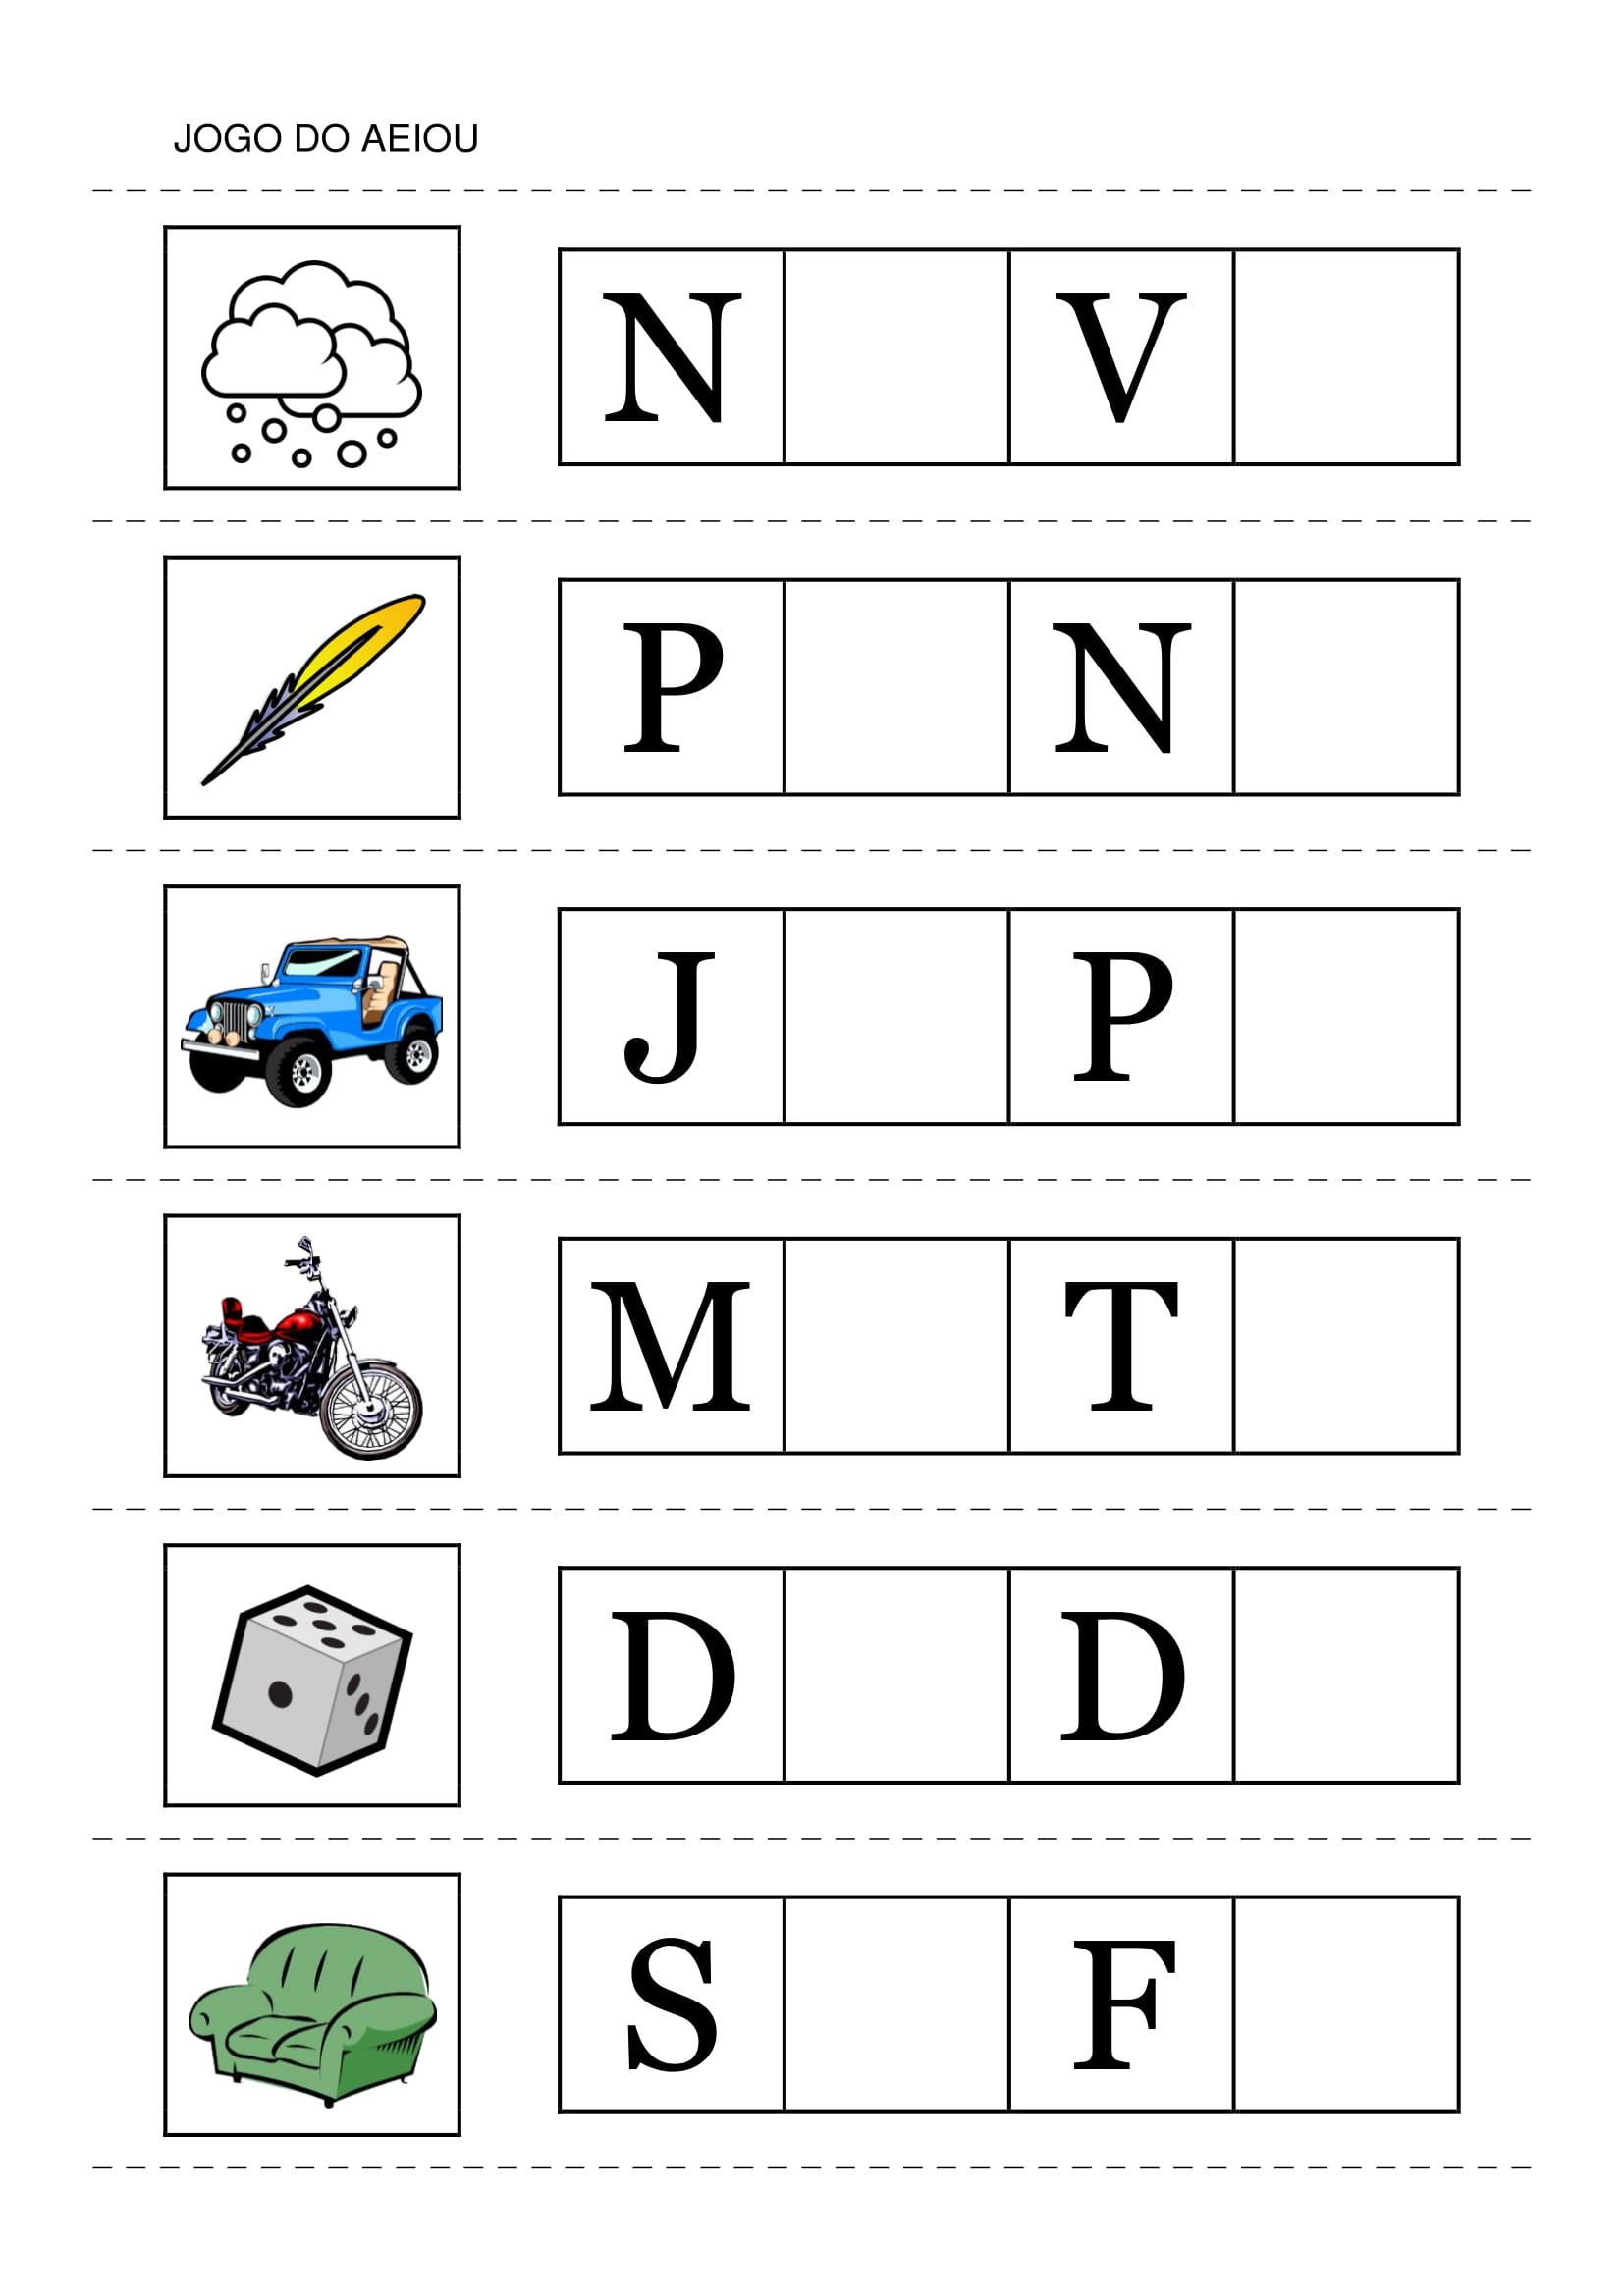 ABC educação infantil: Jogos vogais alfabetização